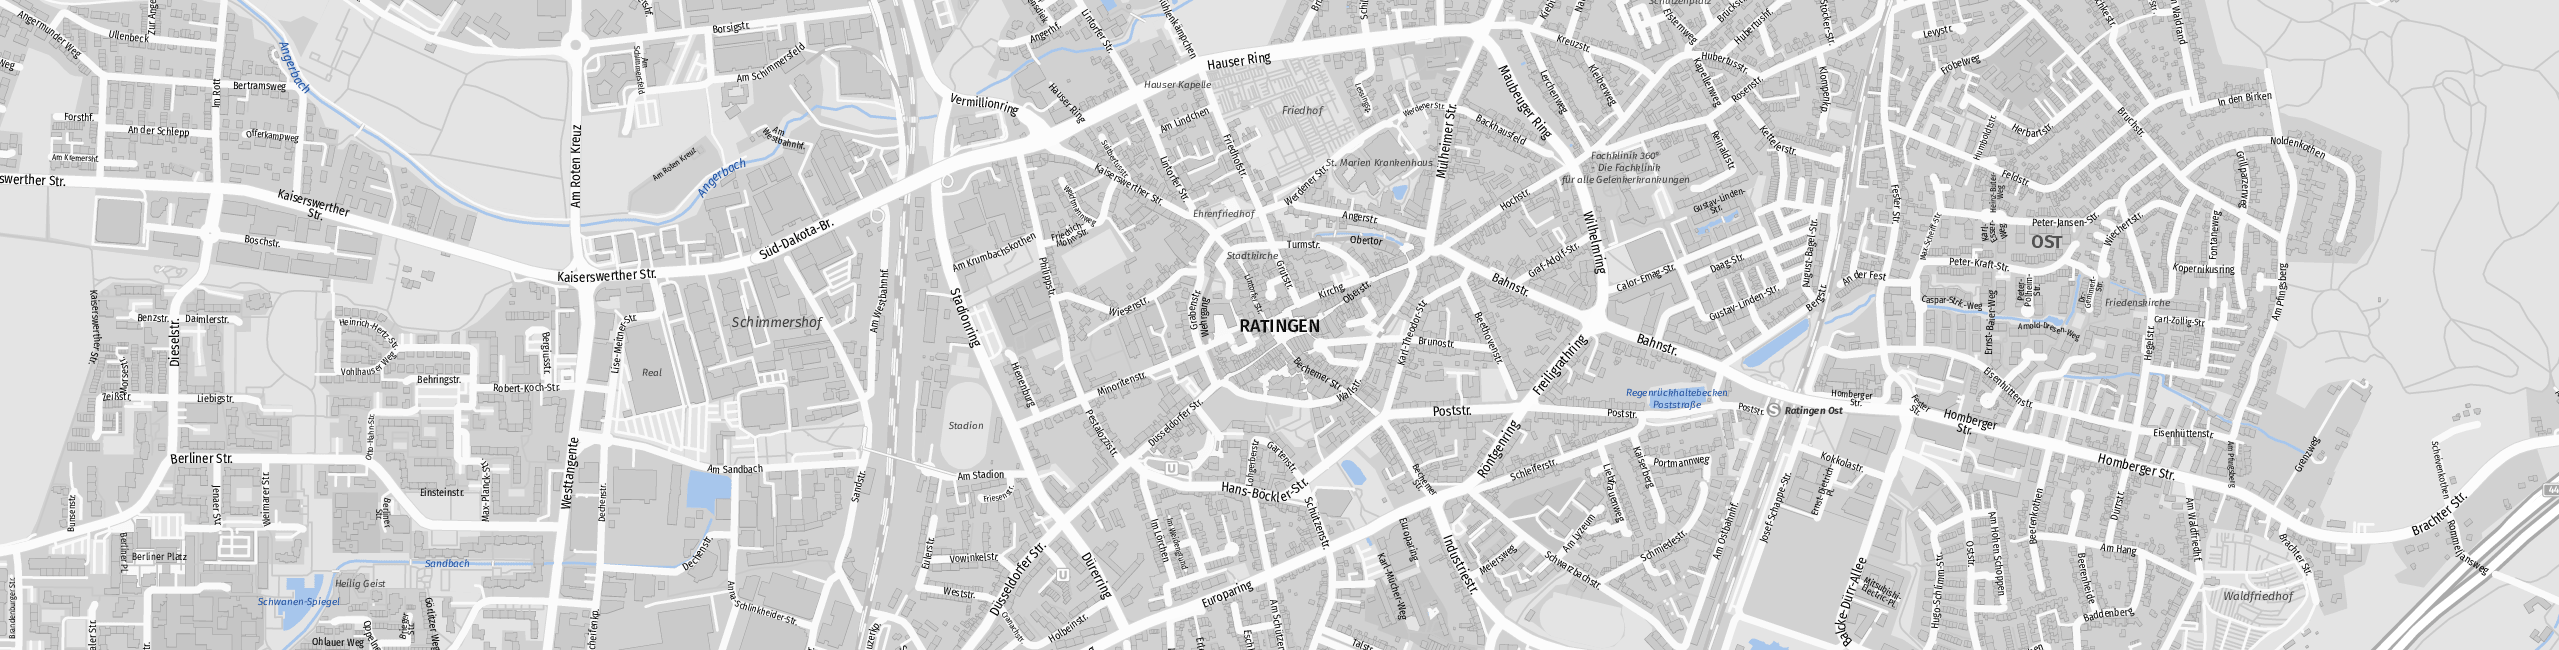 Stadtplan Ratingen zum Downloaden.